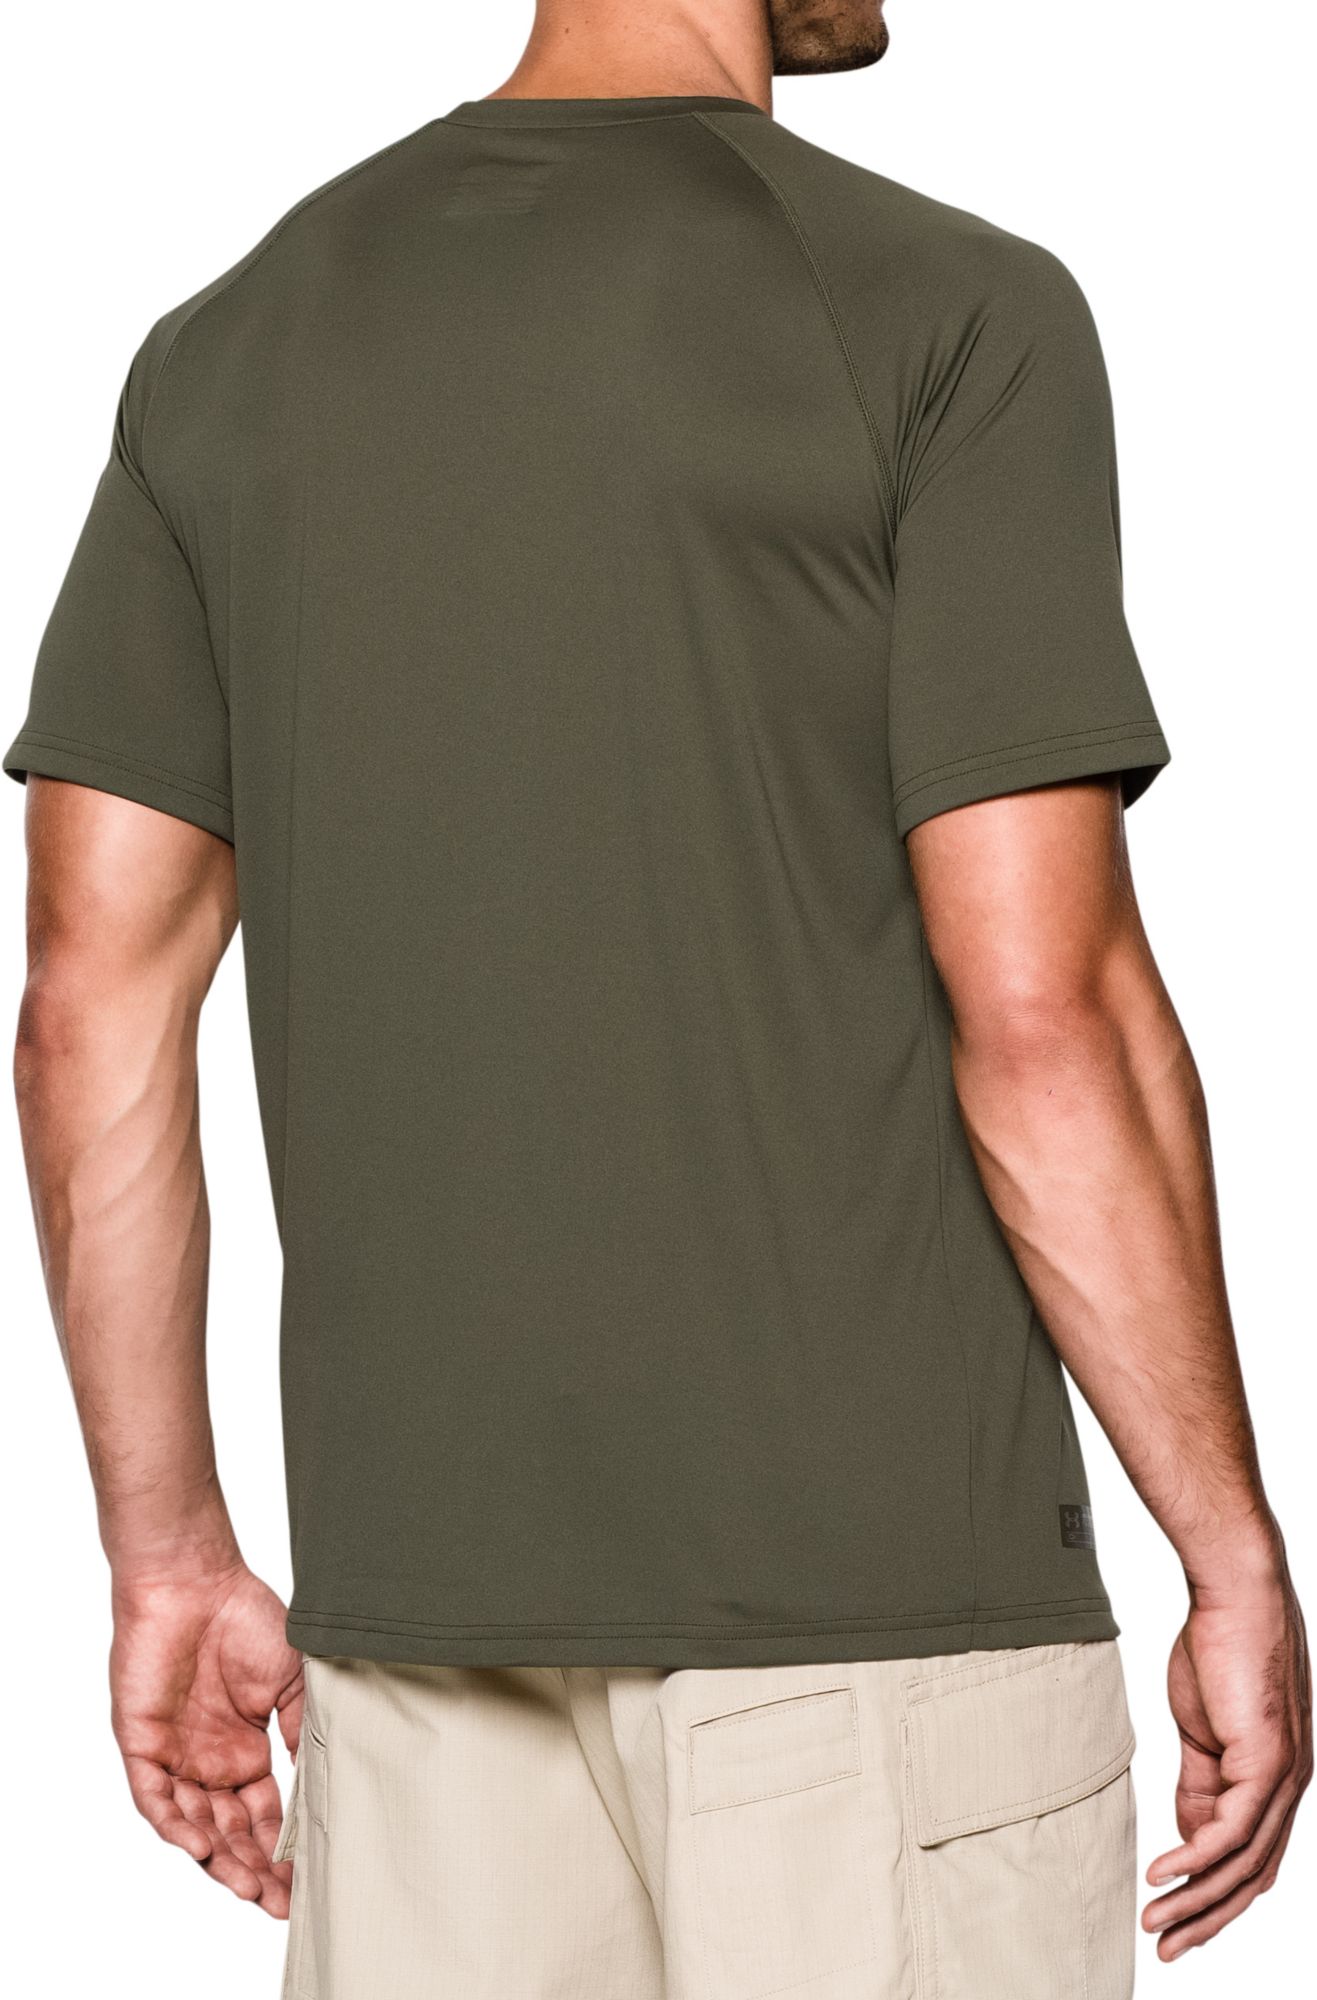 Under Armour Tactical Tech Short-Sleeve T-Shirt for Men